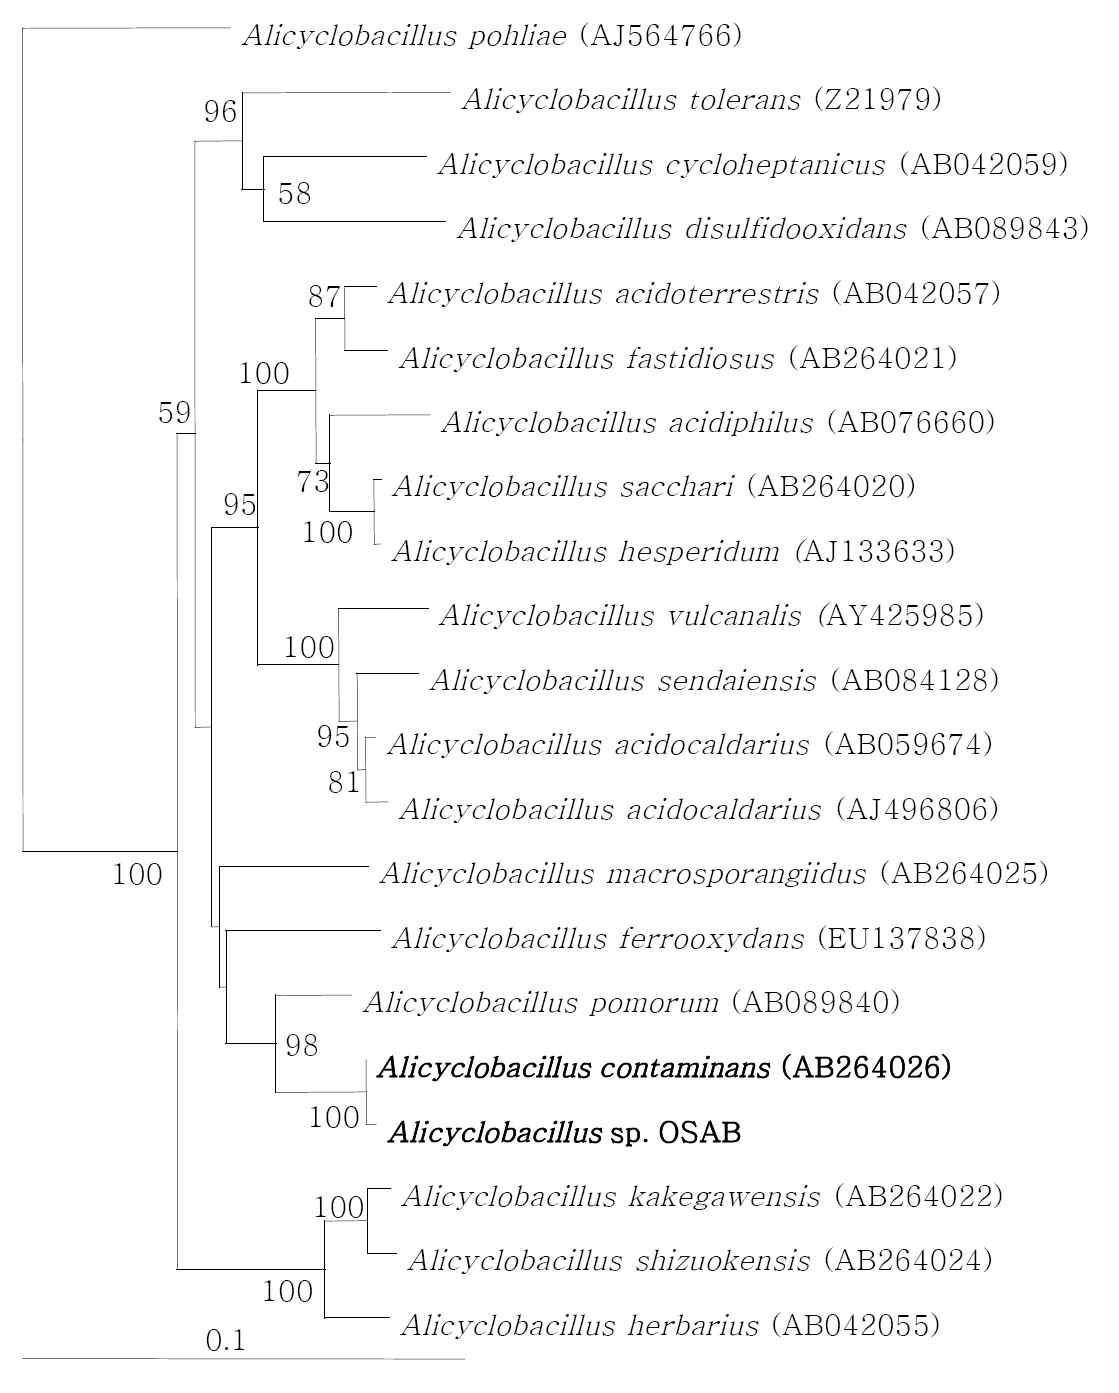 참나무 발효톱밥에서 분리한 Alicyclobacillus sp. OSAB의 phylogenetic tree Outgroup; Streptomyces thermocoprophilus (AJ007402). 1000번의 bootstrap 결과 50% 이상을 숫자로 표시하였다.